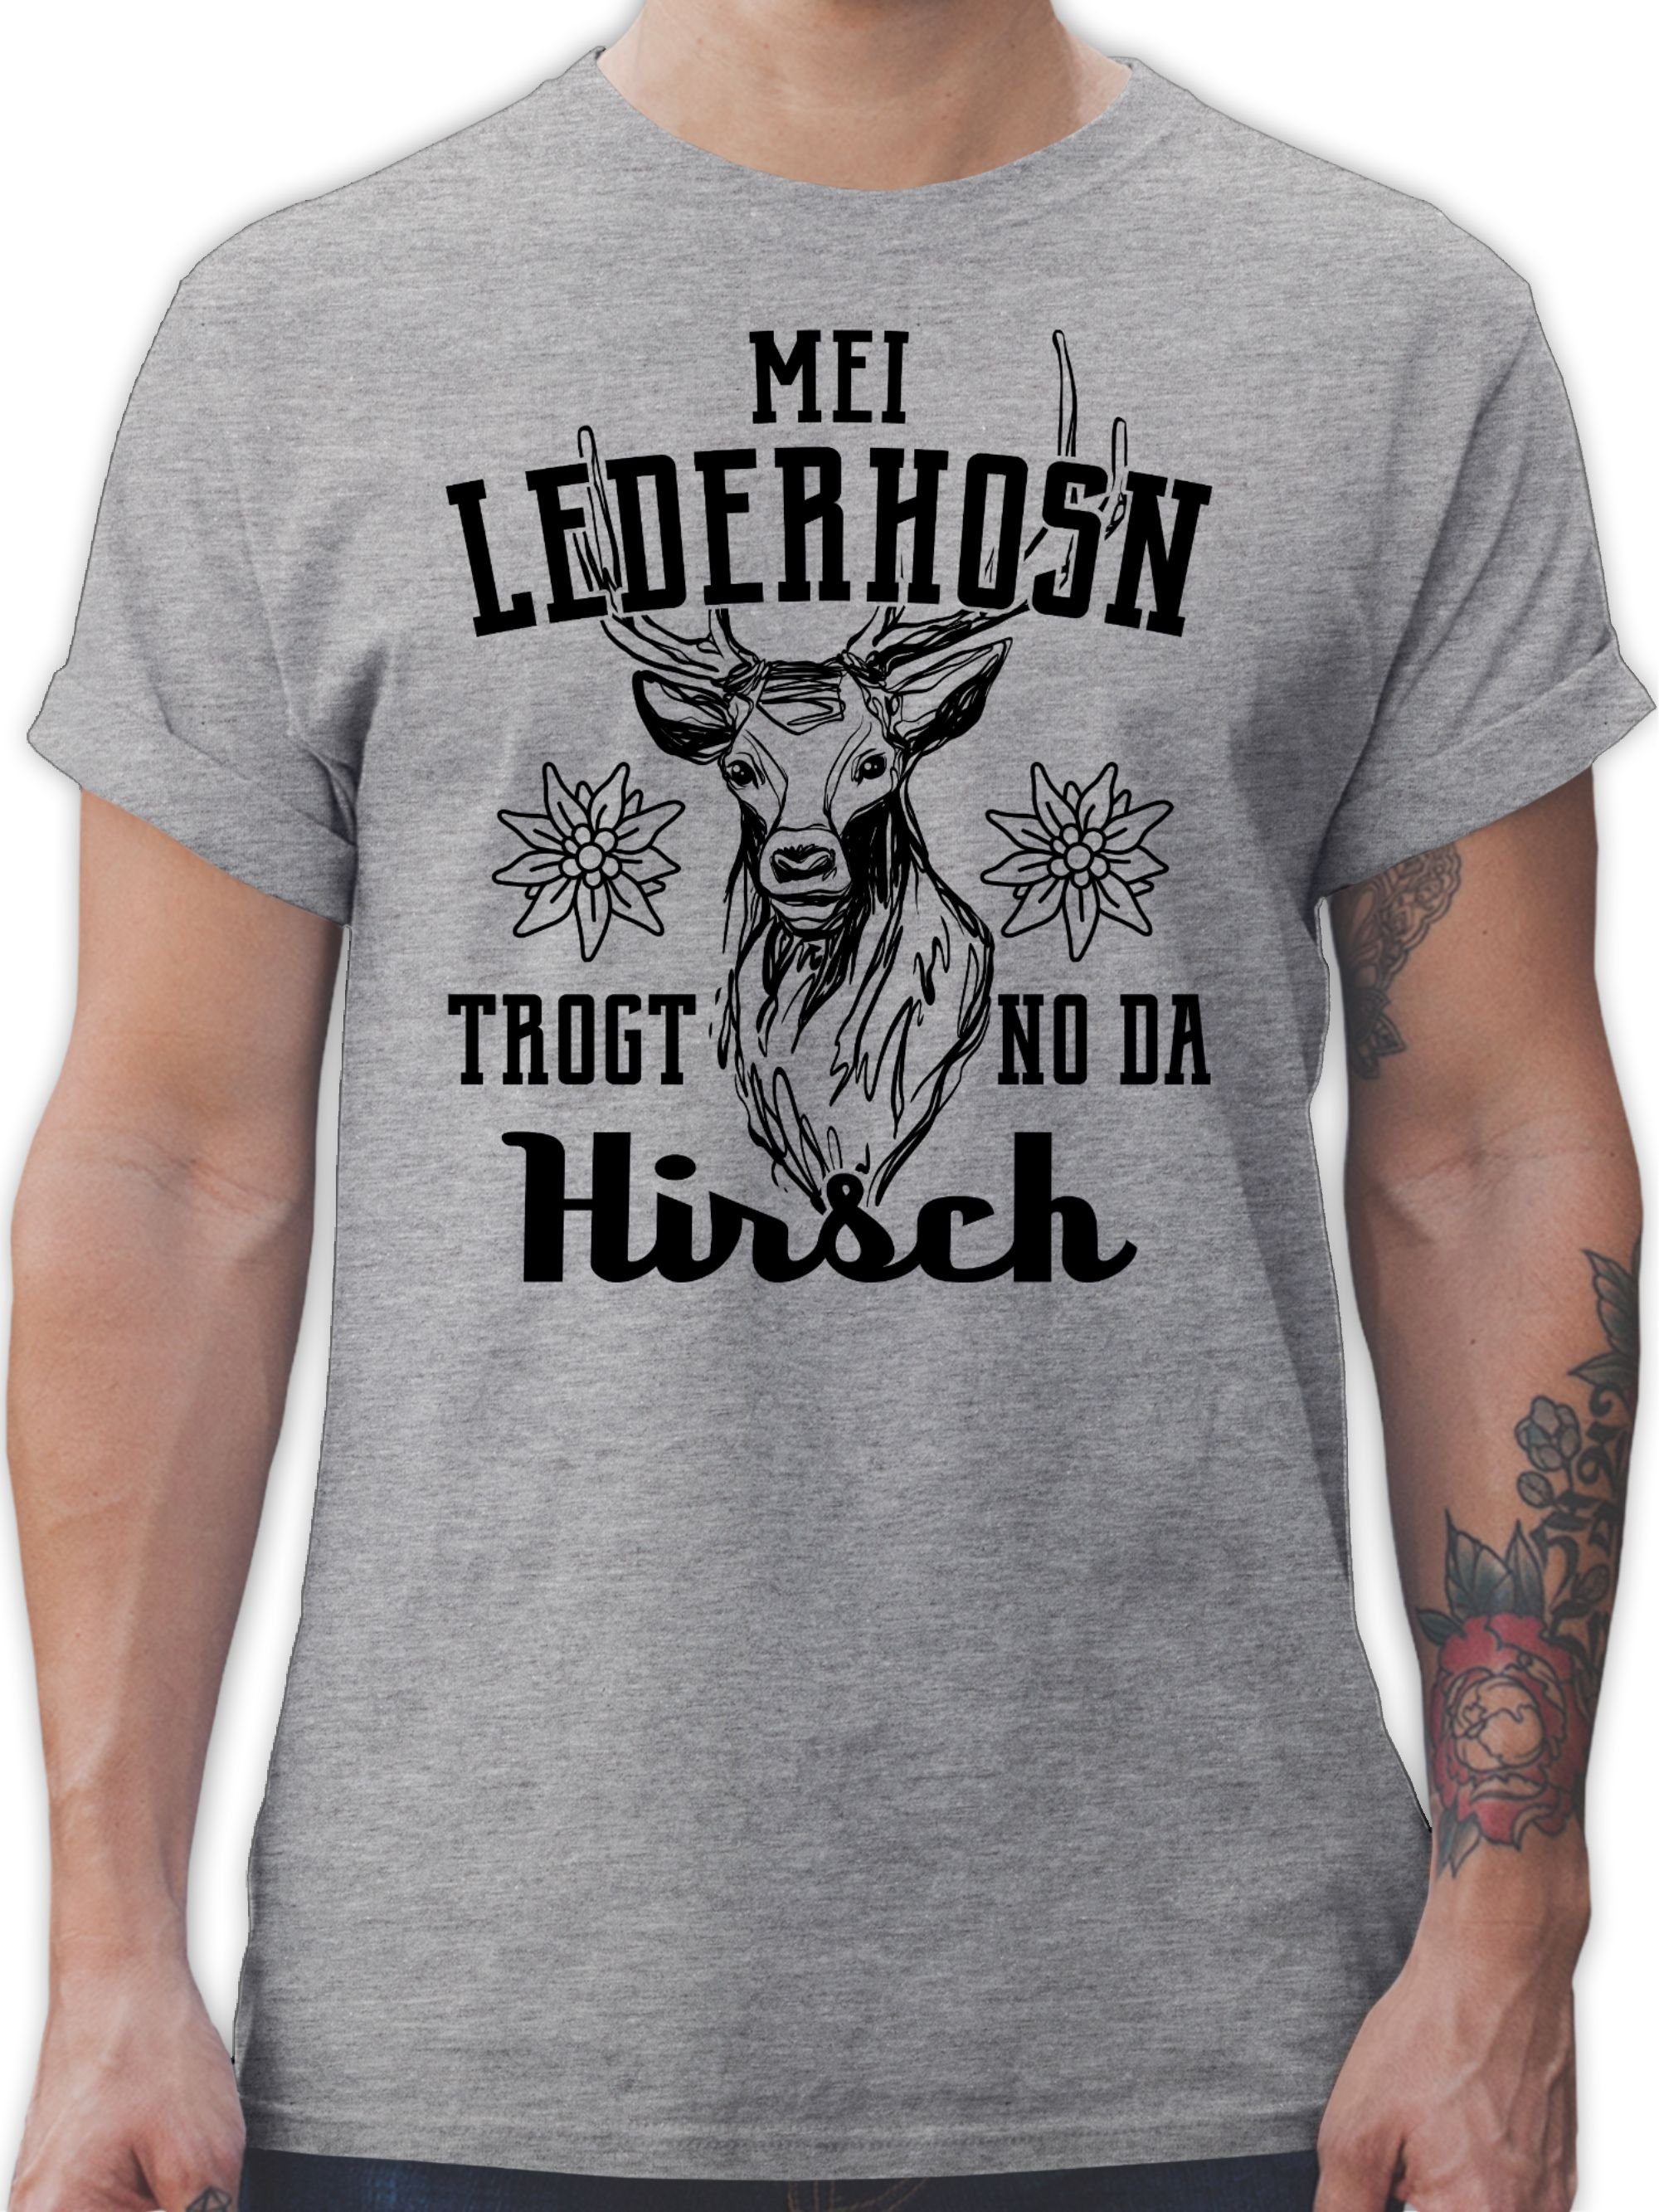 Shirtracer T-Shirt Mei Lederhosn trogt no da Hirsch - schwarz Mode für Oktoberfest Herren 2 Grau meliert